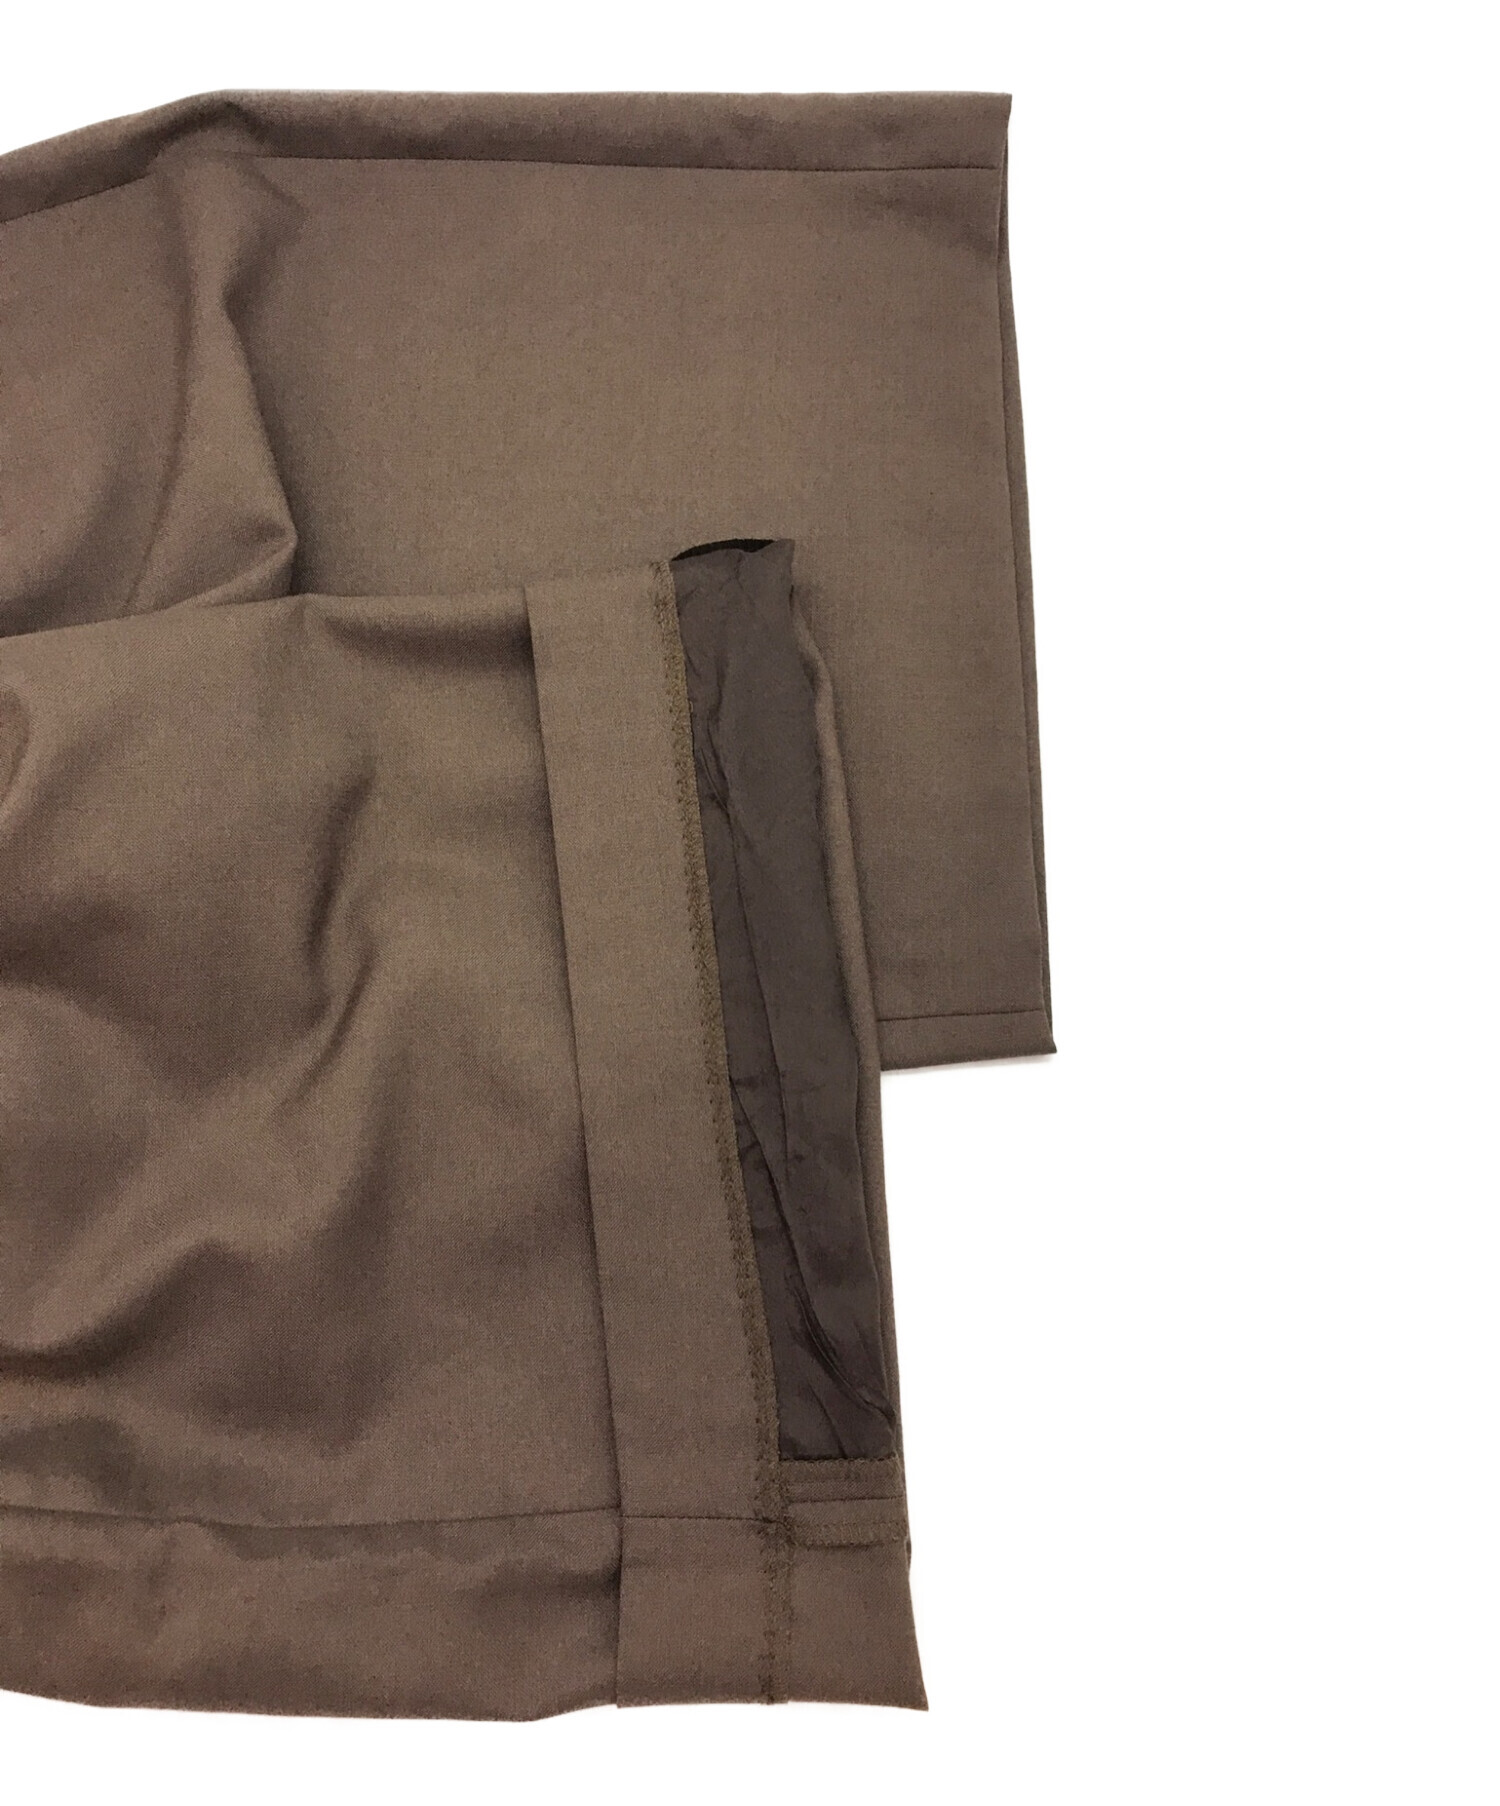 SUPREME (シュプリーム) Wool Trouser Short / ウールトラウザーショーツ / ハーフパンツ / 23SS ブラウン  サイズ:32